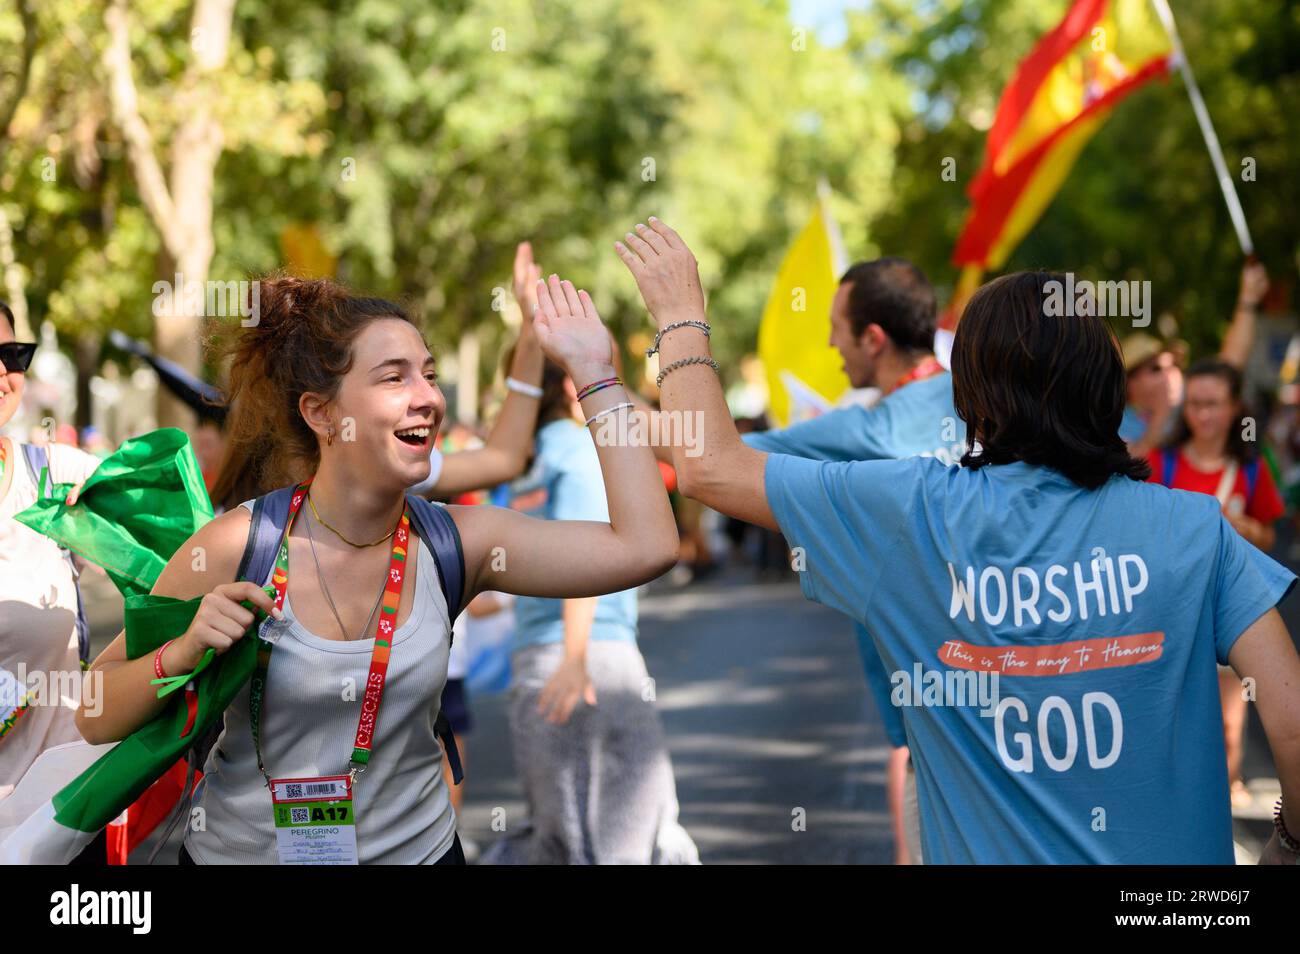 Banda de adoración Tiritaito que dirige una 'fiesta de adoración' de los peregrinos en su camino a la Santa Misa de apertura en el Parque Eduardo VII en Lisboa, Portugal. Foto de stock